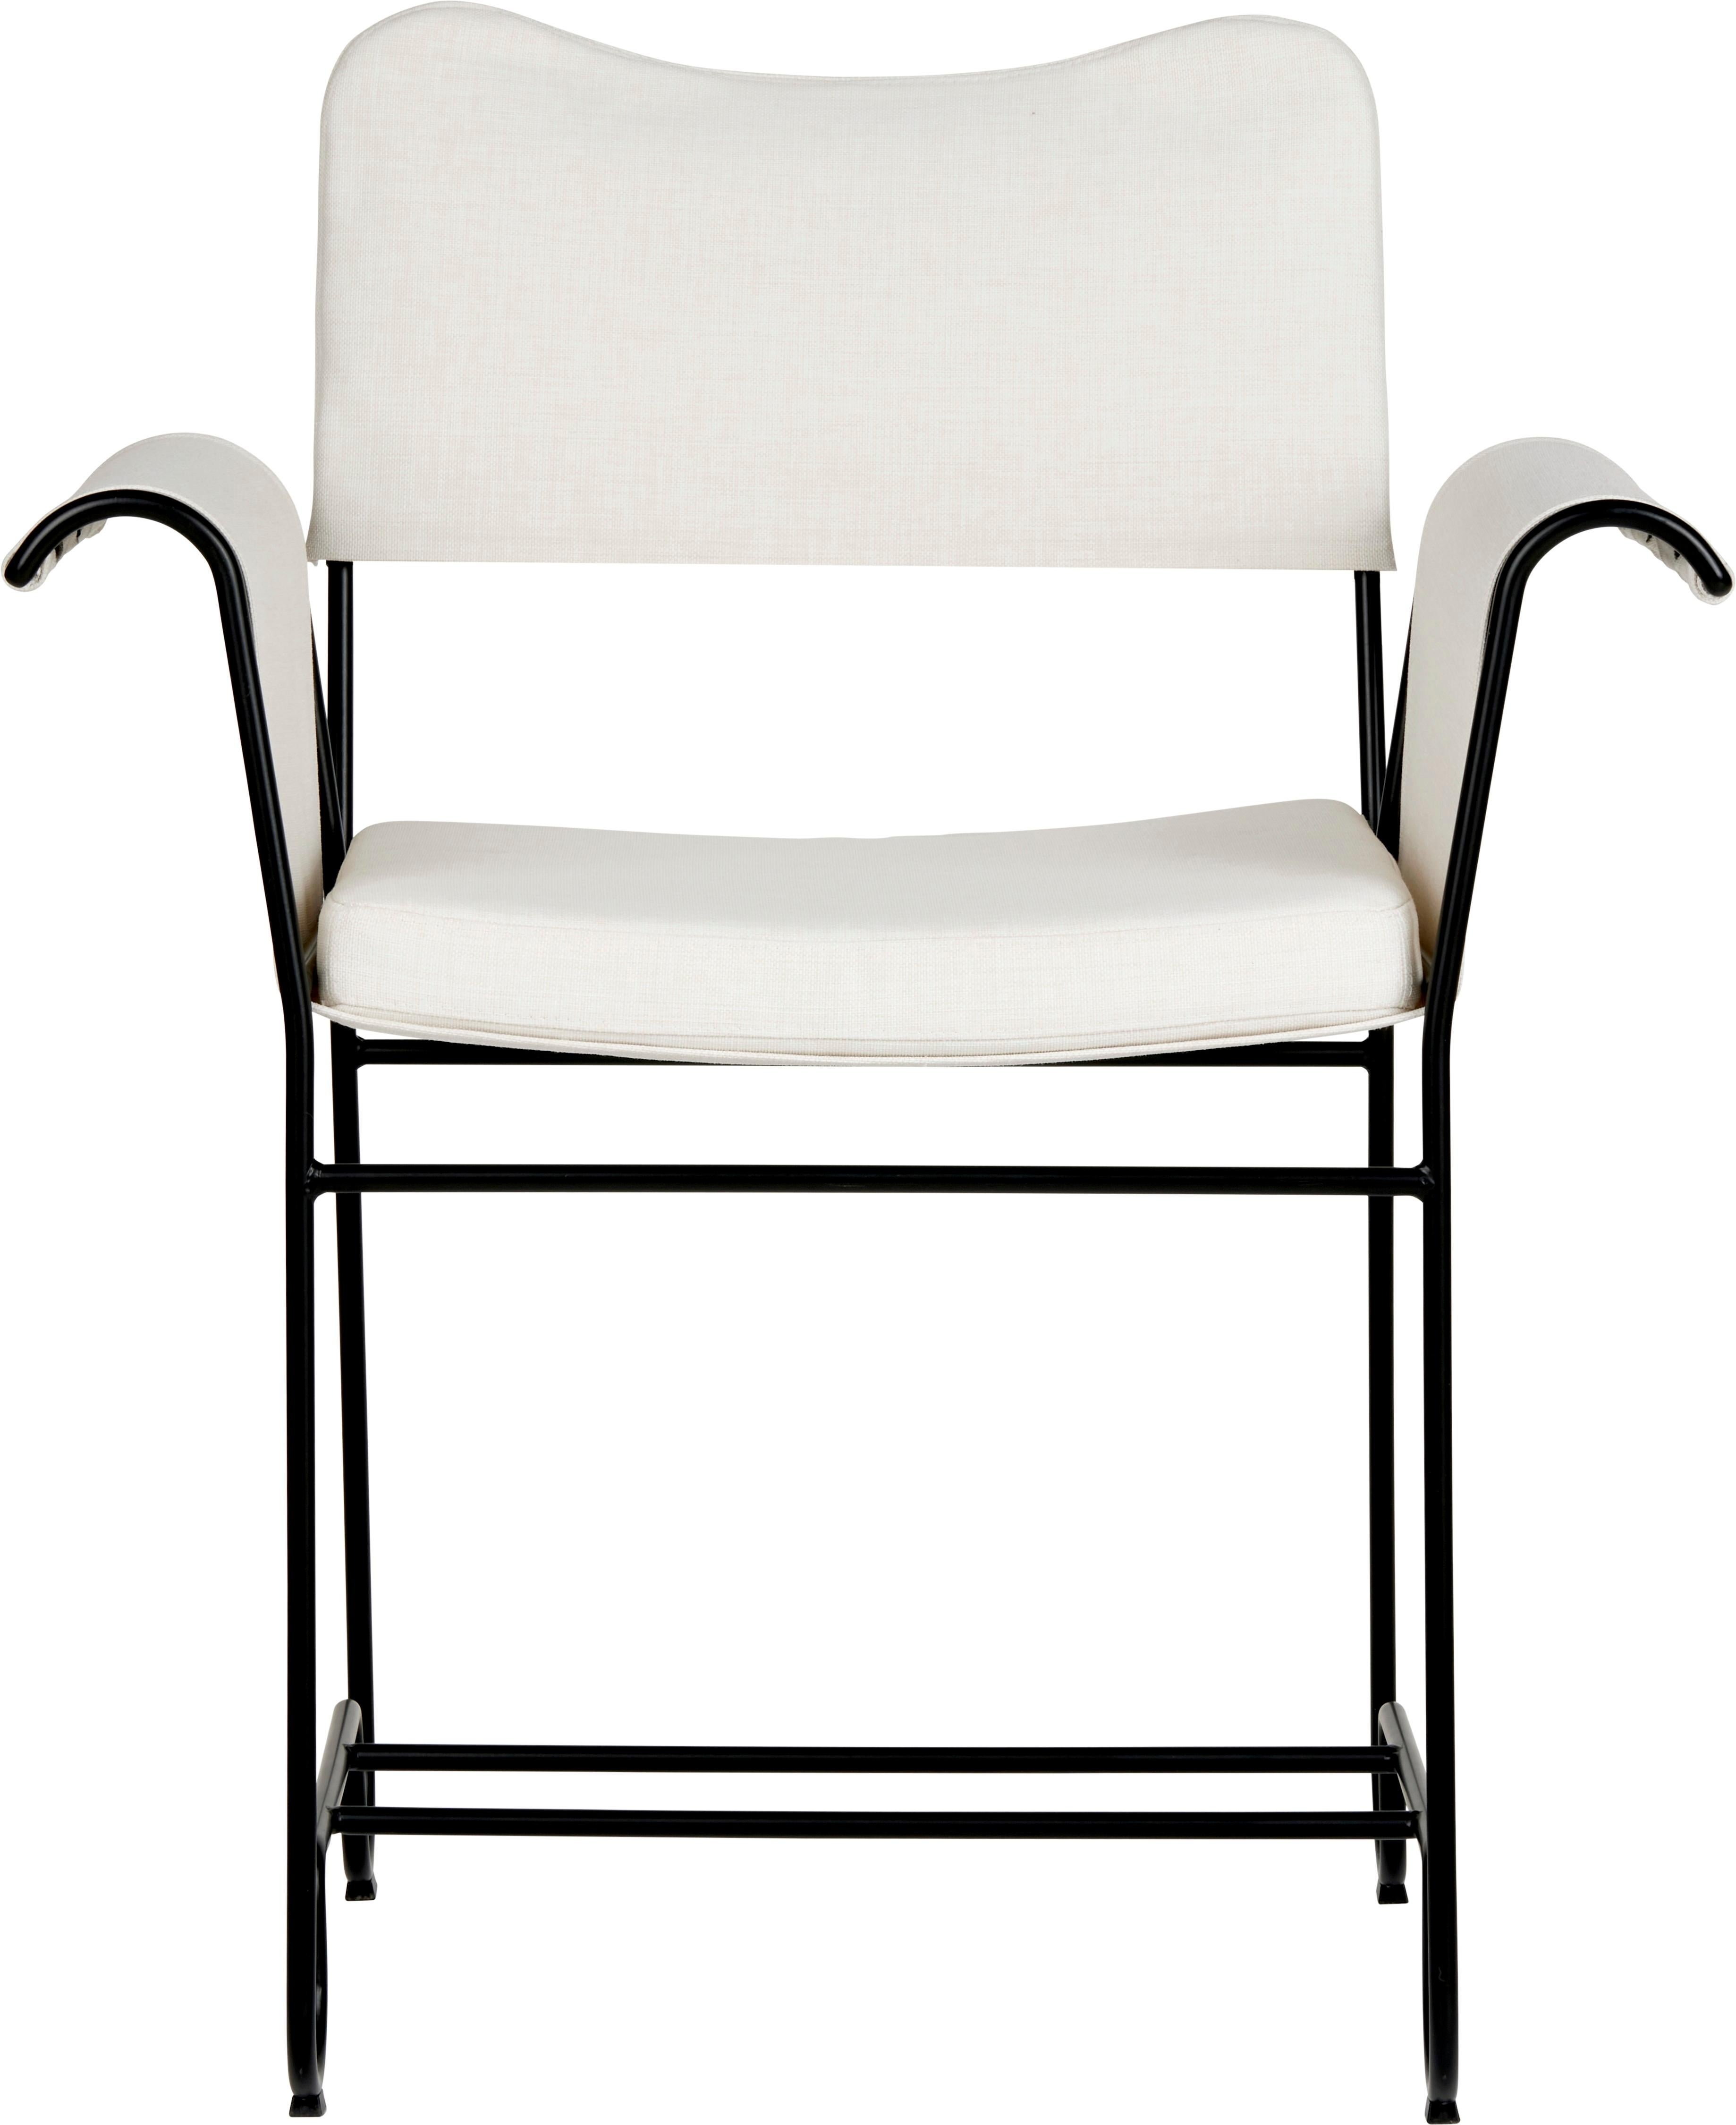 Danish Tropique Dining Chair-Leslie 006/Classic Black Base-by Mathieu Matégot for Gubi